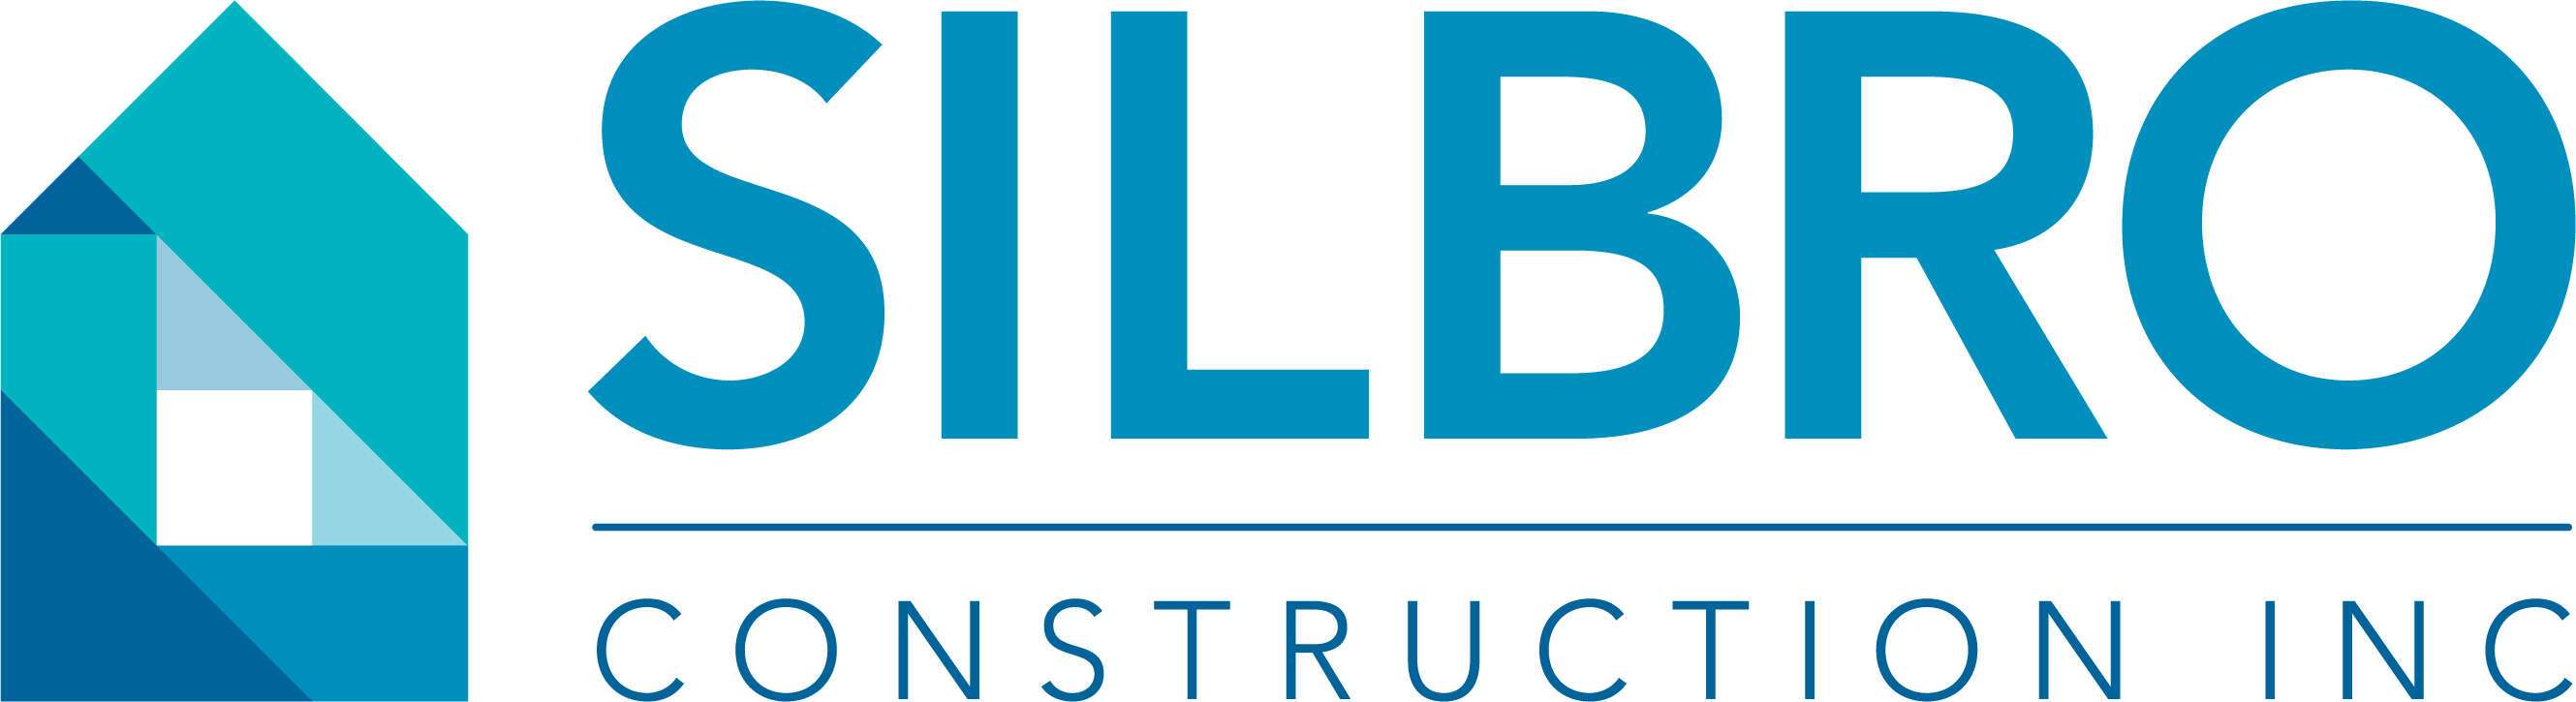 Silbro Construction